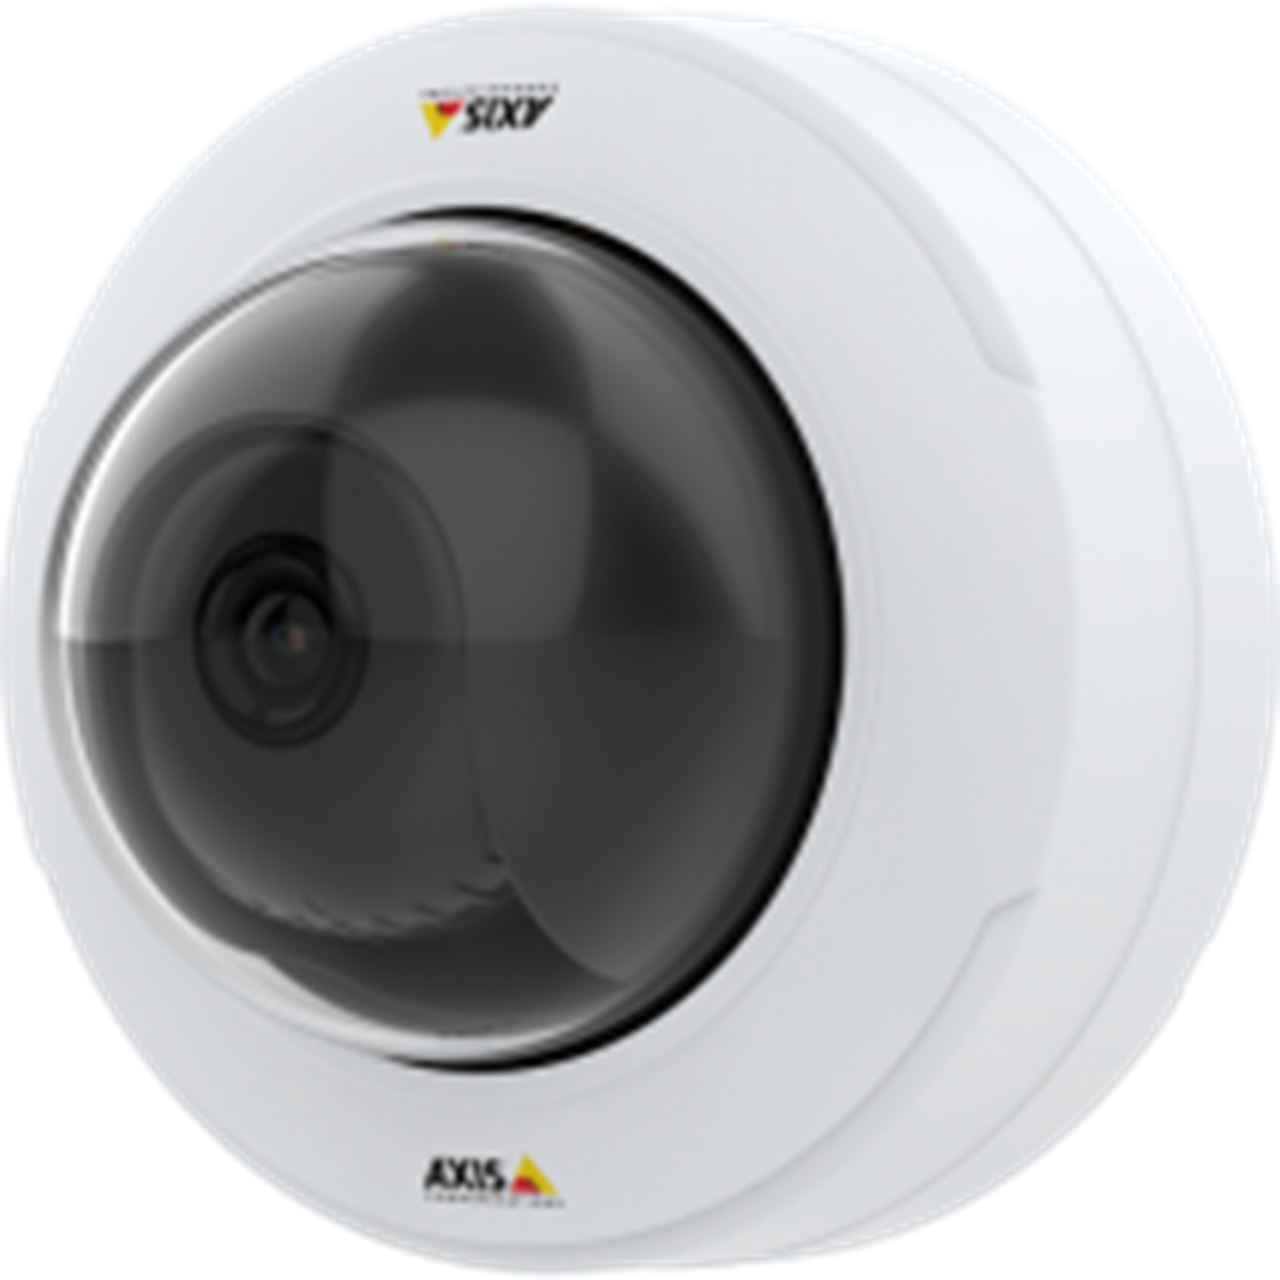 AXIS P3245-V Network Camera Armenia Vantag LLC 